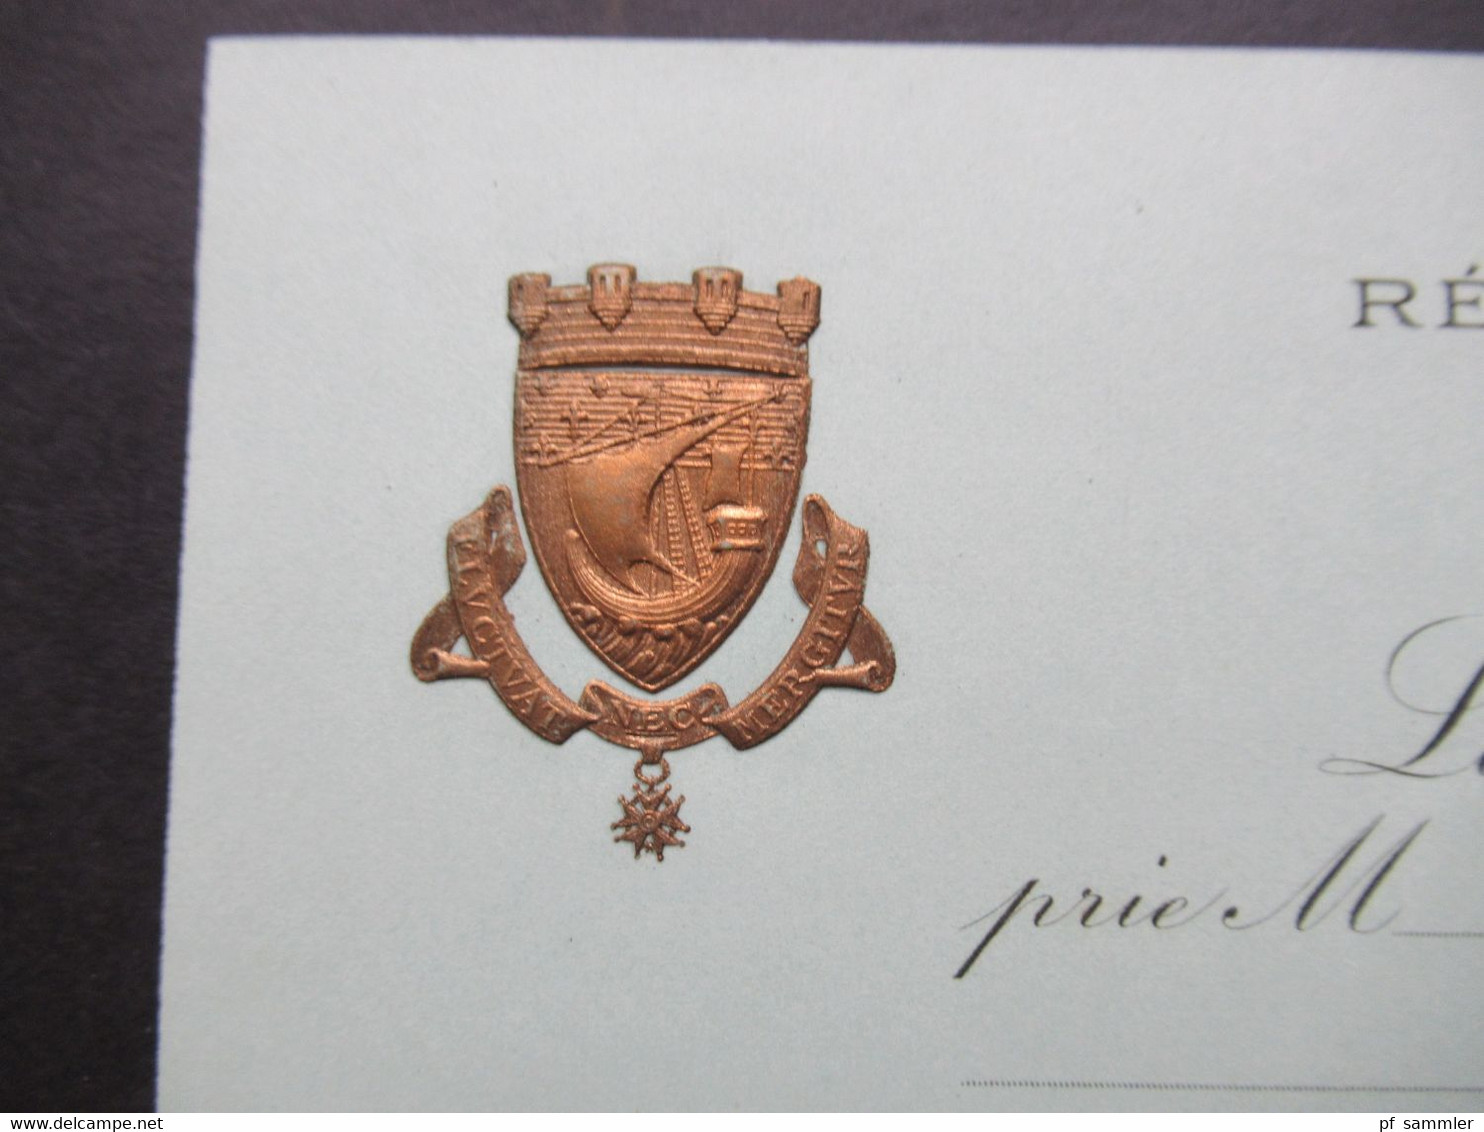 Paris Einladungskarte Tenue De Soirée Prägung Municipalite De Paris Representants De Bruxelles, Anvers, Liege Et De Gand - Historical Documents